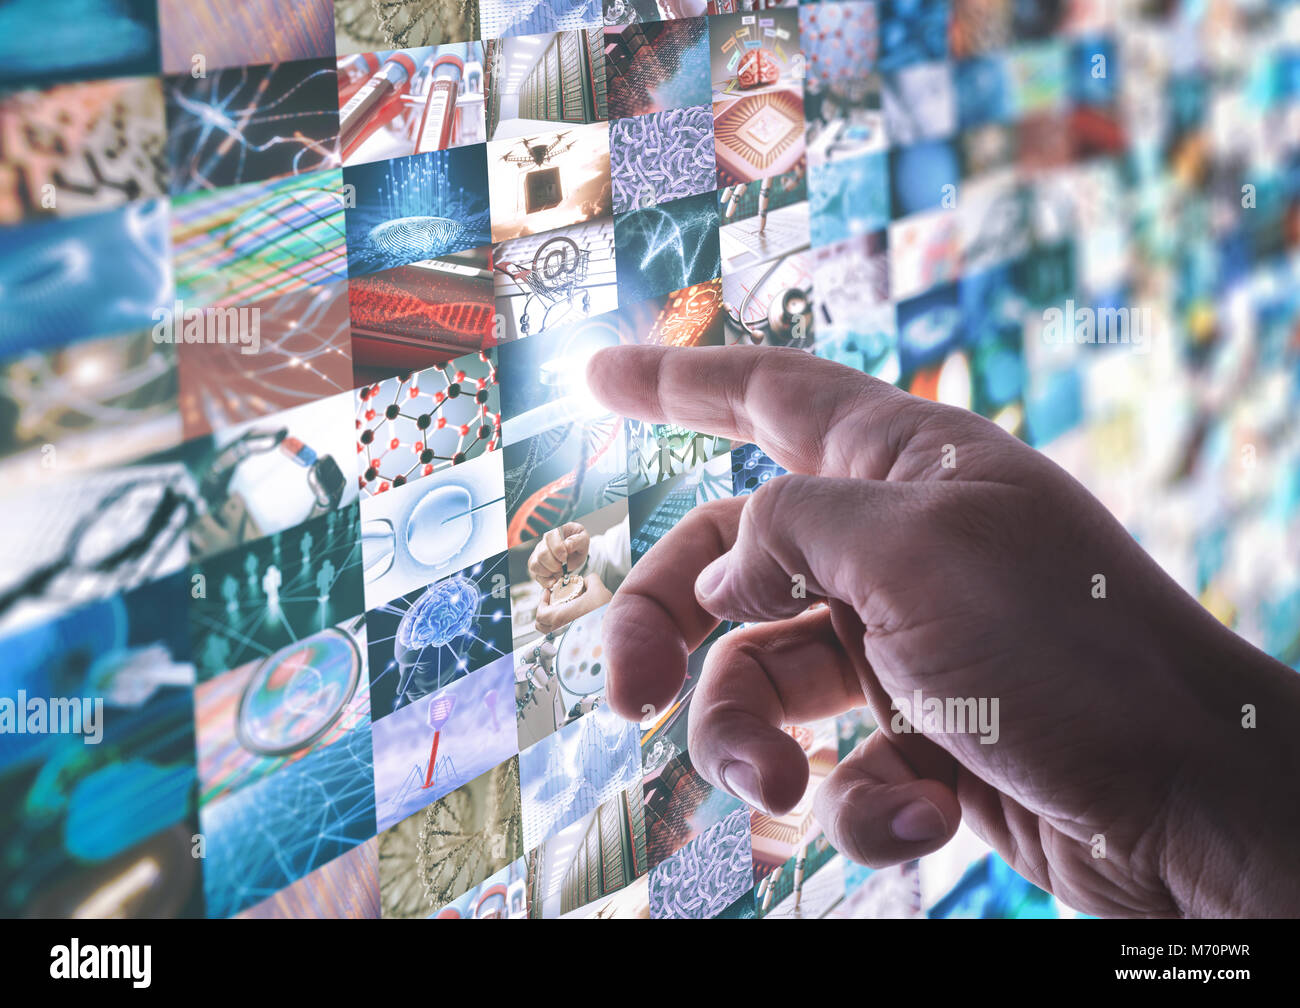 La main touche l'écran tactile du panneau led avec différentes images à propos de la technologie et de la science. Banque D'Images